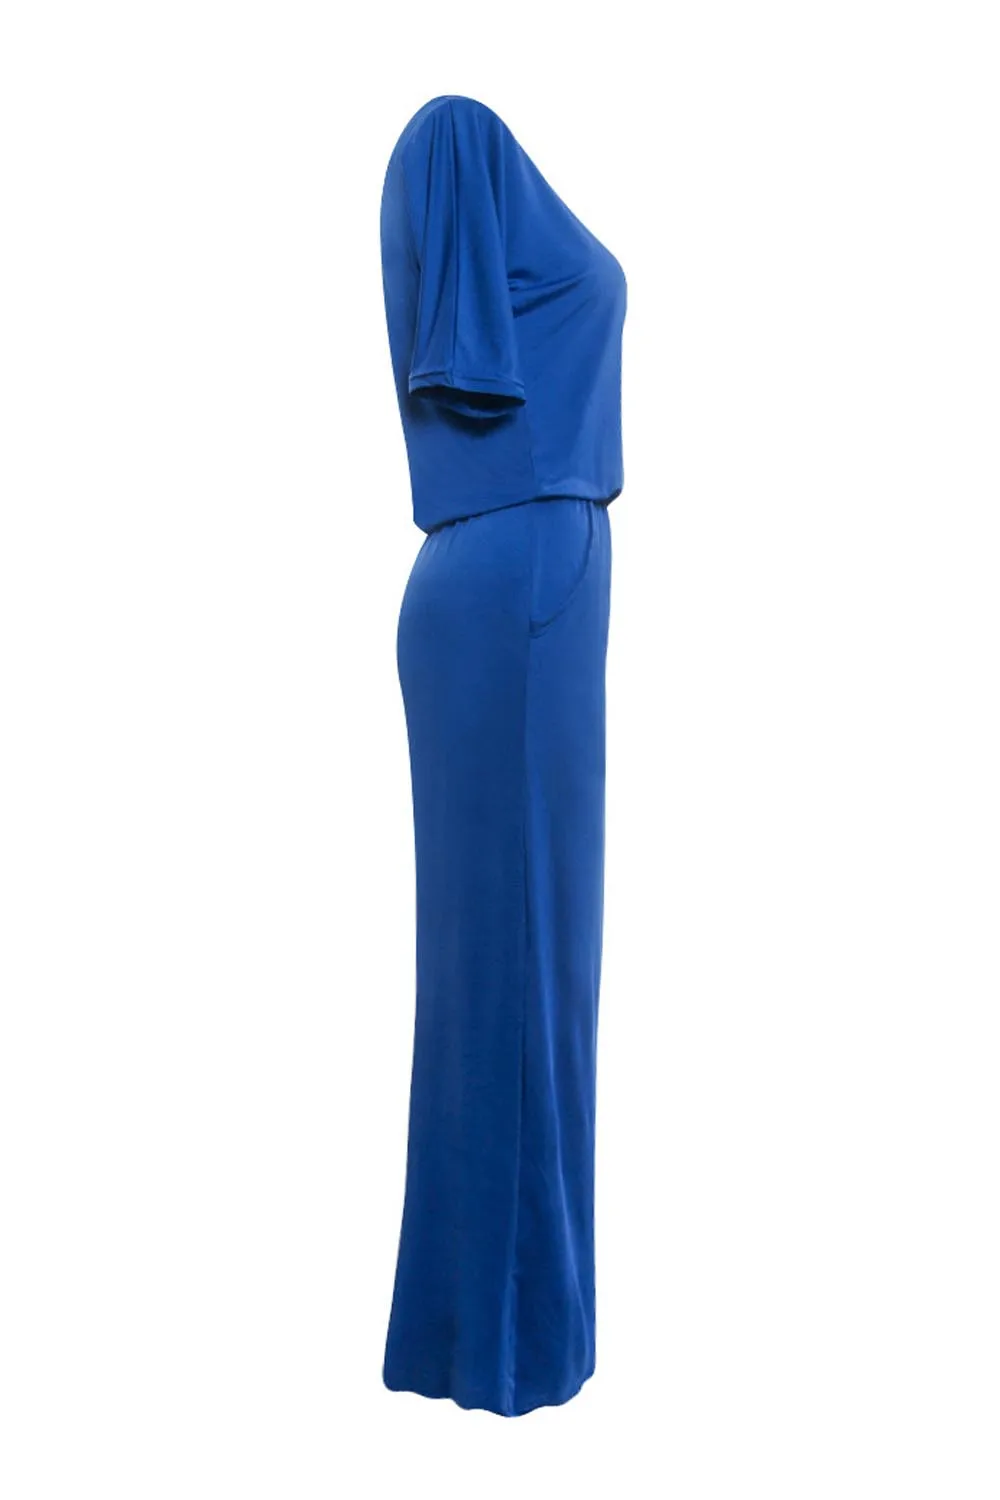 Женское платье сексуальное платье без бретелек женское летнее, длинное, Макси Сарафан Boho вечернее платье с карманом#40